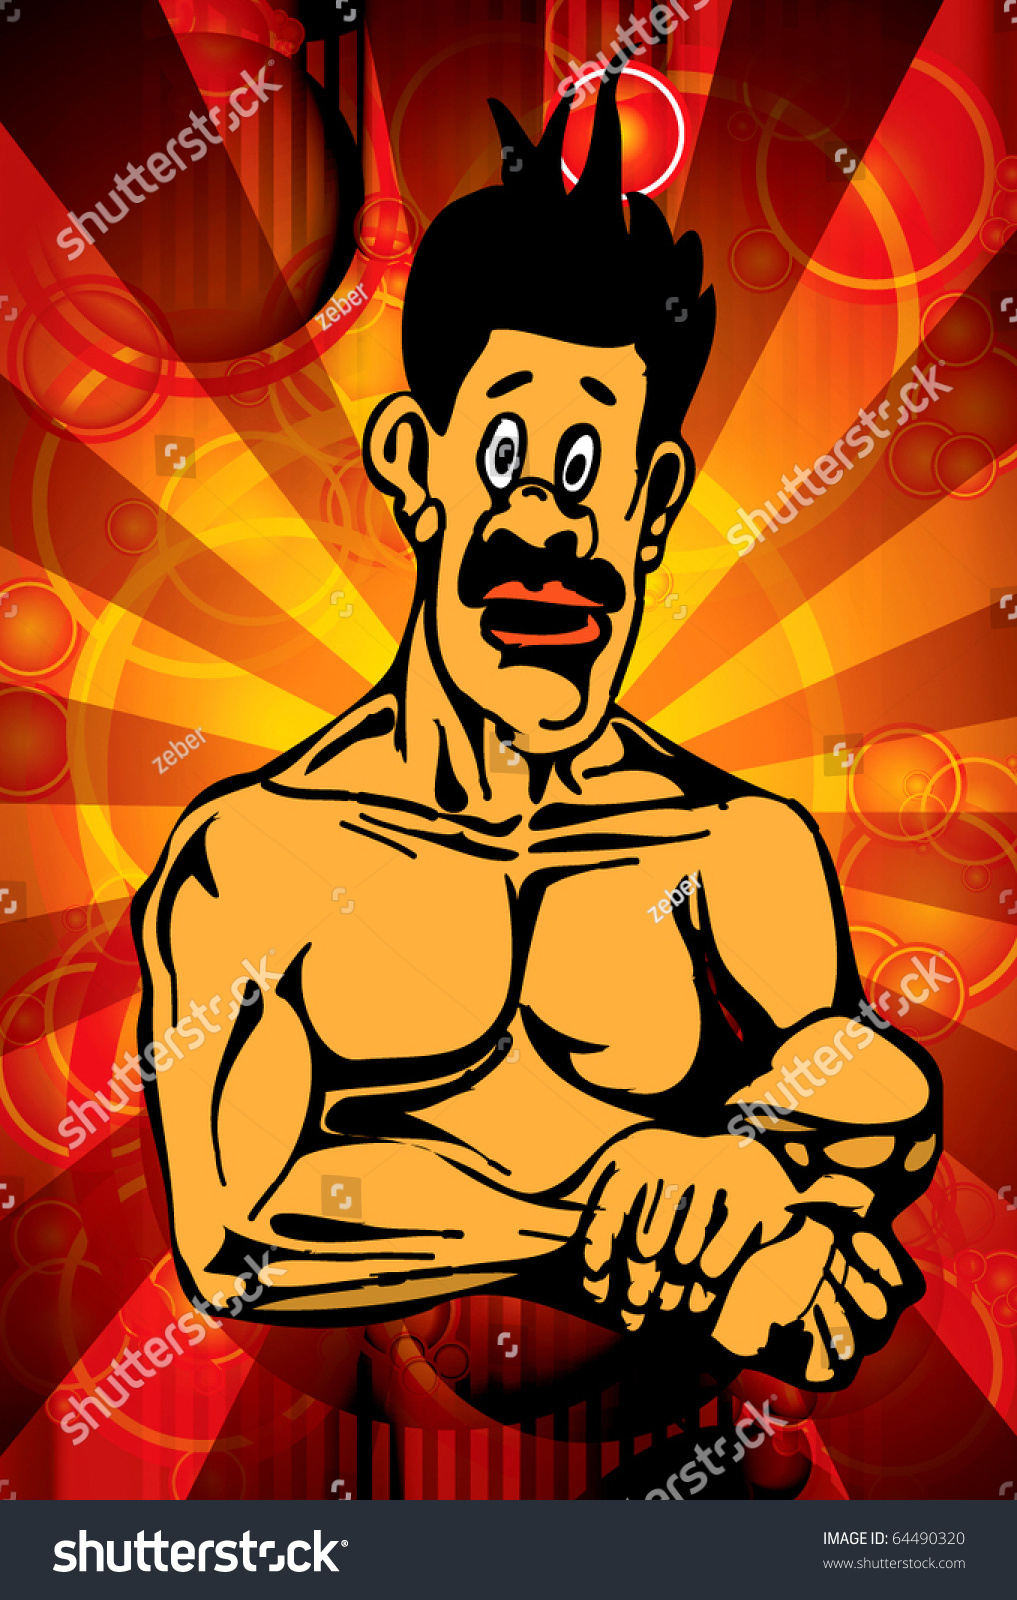 Bodybuilder Cartoon Stock Vector Illustration 64490320 : Shutterstock